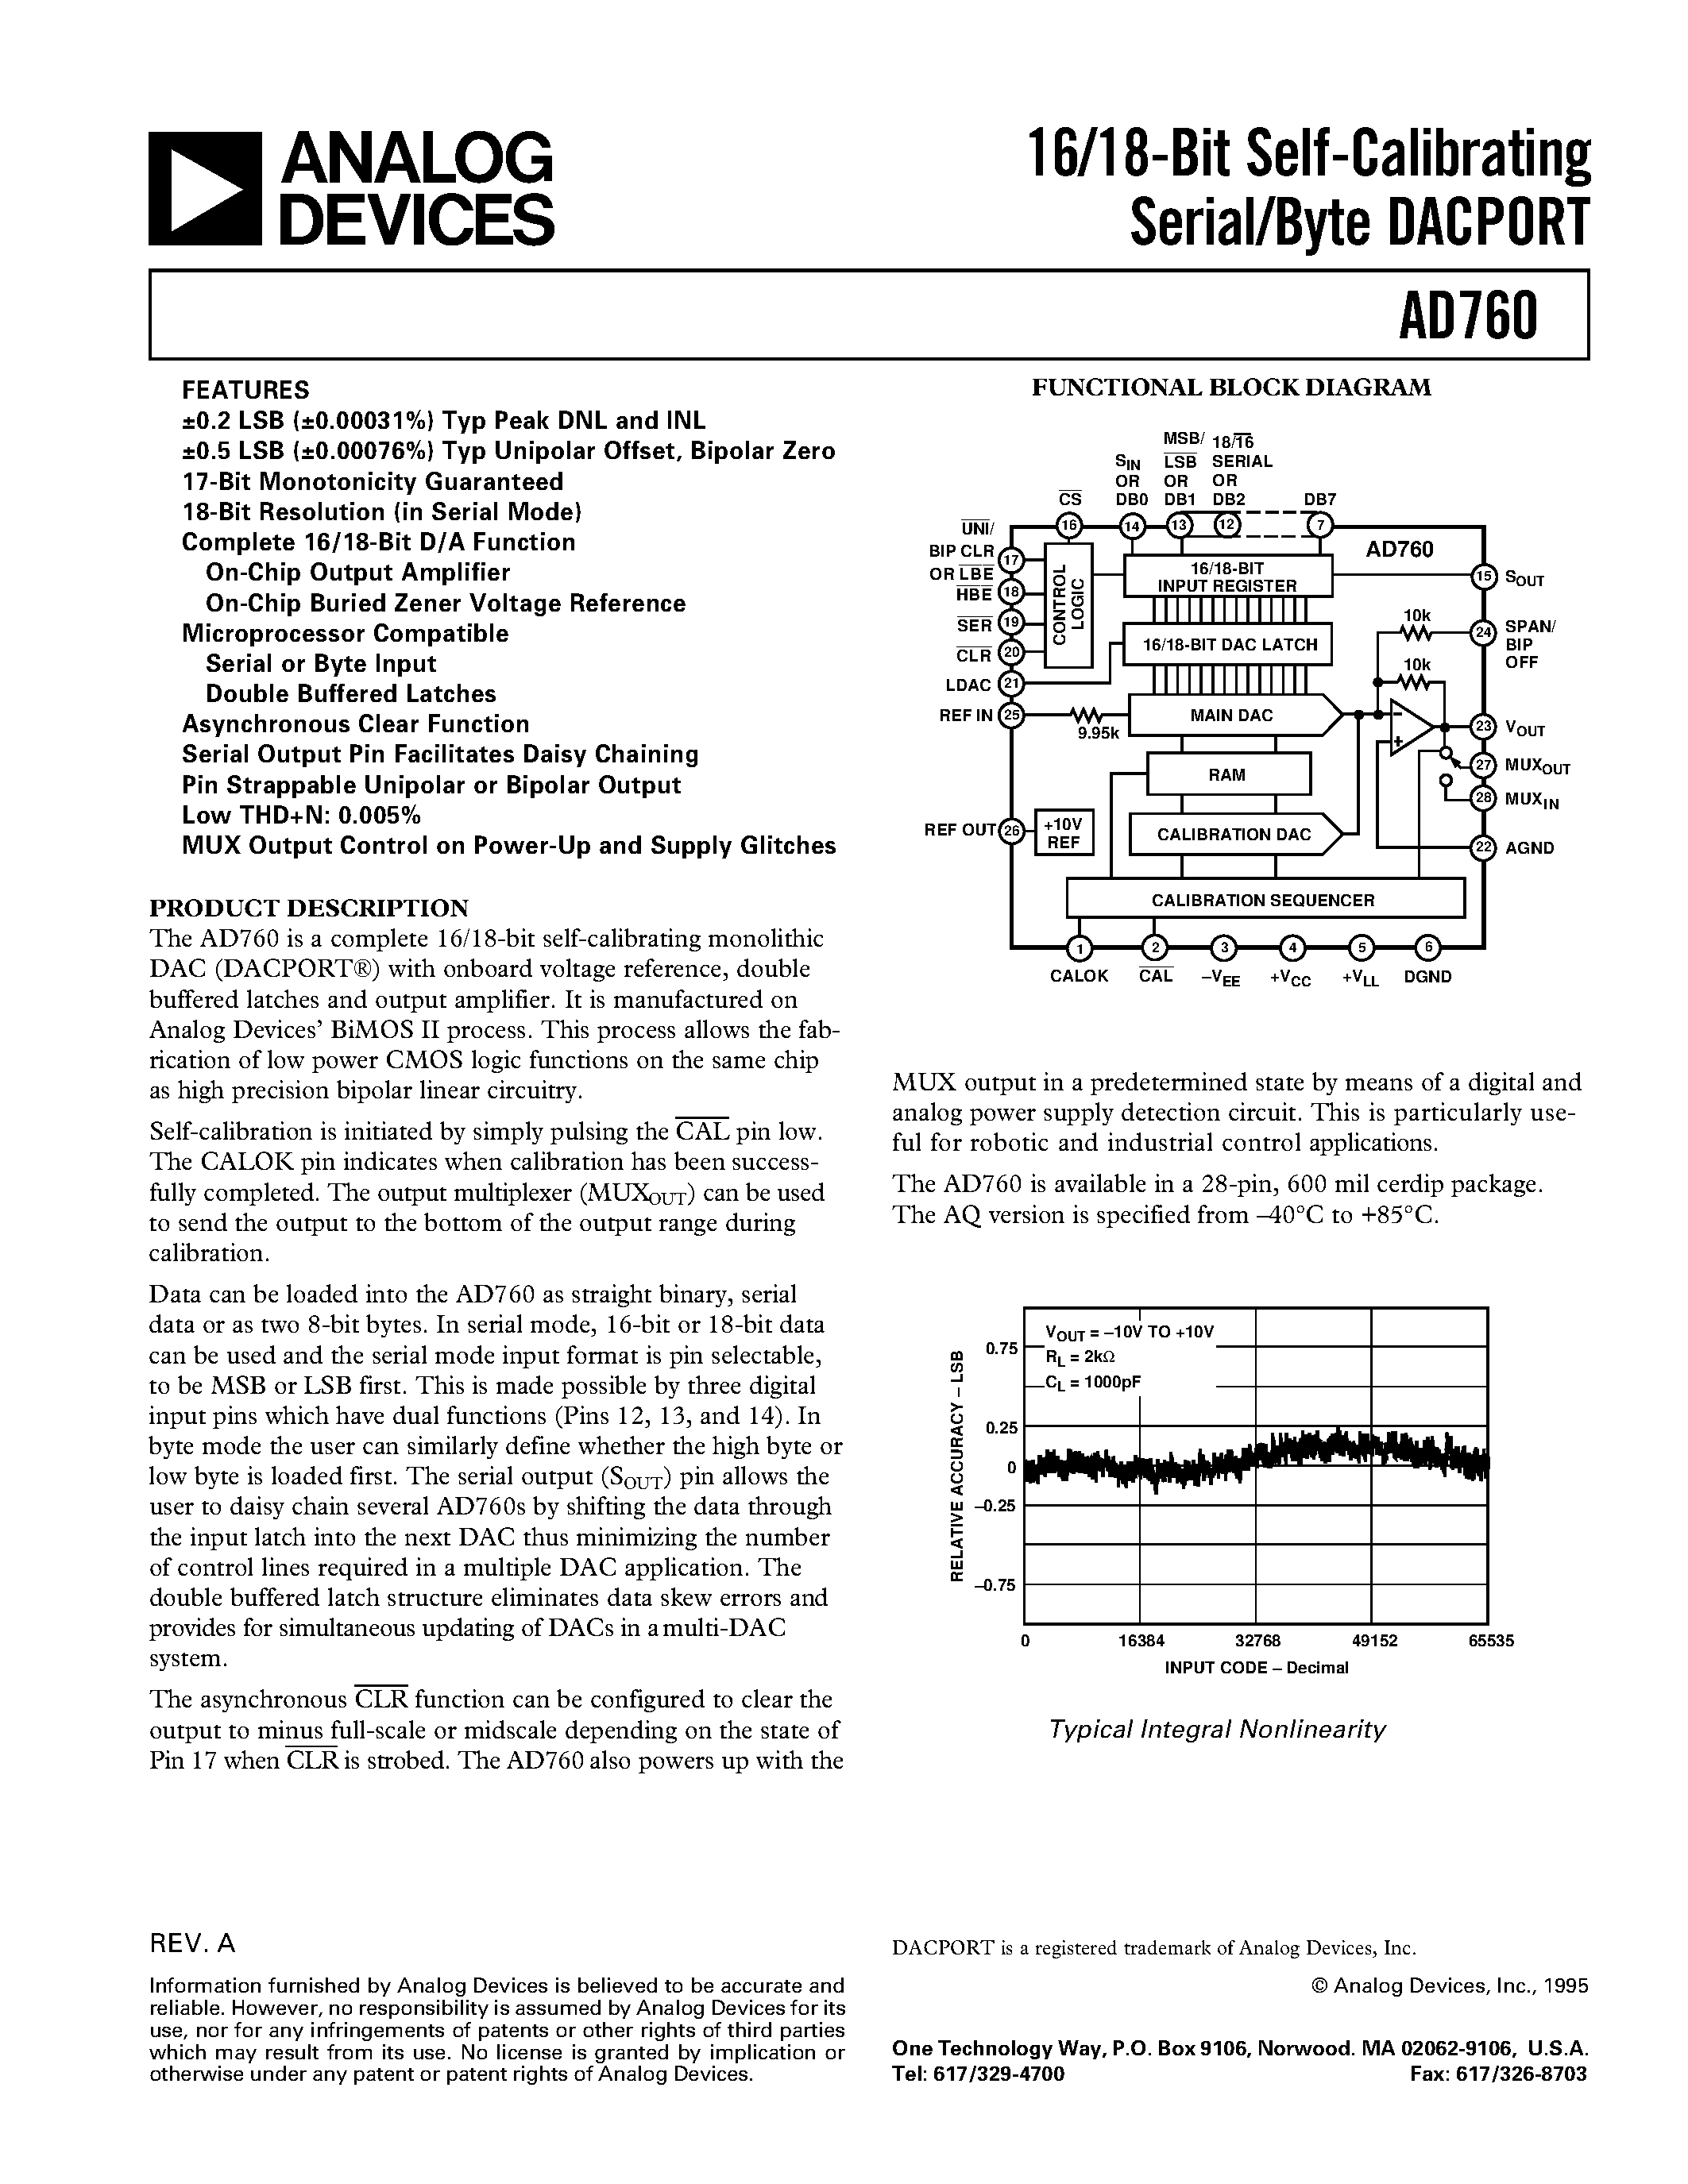 Datasheet AD760AQ - 16/18-Bit Self-Calibrating Serial/Byte DACPORT page 1